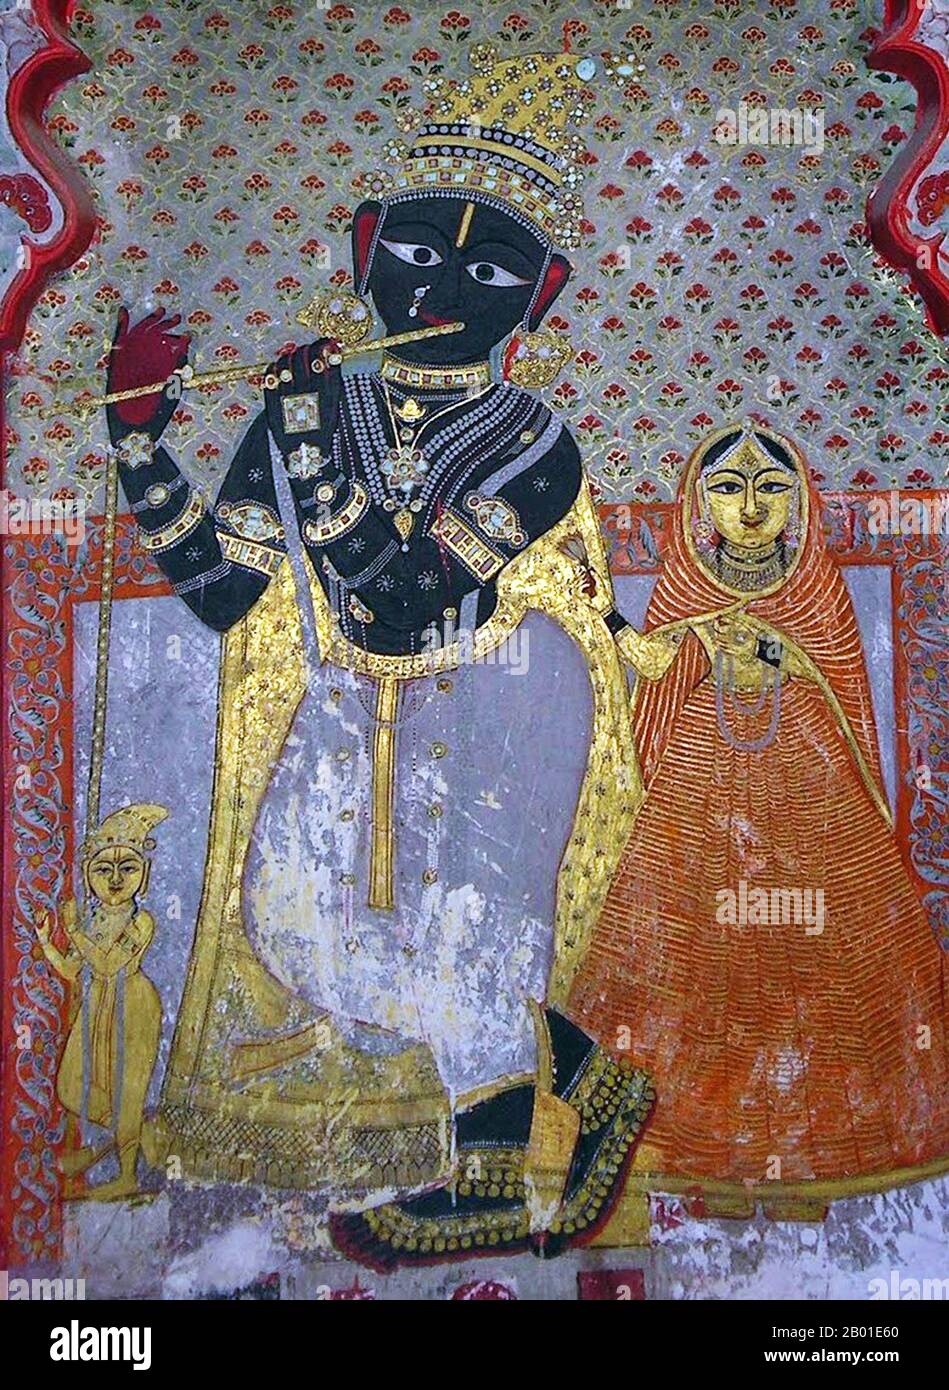 Inde: Peinture murale de Krishna jouant une flûte sur un mur de palais au palais de la ville d'Udaipur, vers 18th-19th siècle. Photo par Pebble101 (Licence CC BY-sa 3,0). Krishna (littéralement 'dark, noir, bleu foncé') est une figure centrale de l'hindouisme et est traditionnellement attribuée à la paternité de la Bhagavad Gita. Il est un Avatar de Vishnu et considéré dans certaines traditions monothéistes comme l'être Suprême. Krishna est identifié comme un individu historique qui a participé aux événements du Mahābhārata. Krishna est souvent décrit comme un bébé ou un jeune garçon jouant une flûte comme dans la Bhagavata Purana. Banque D'Images